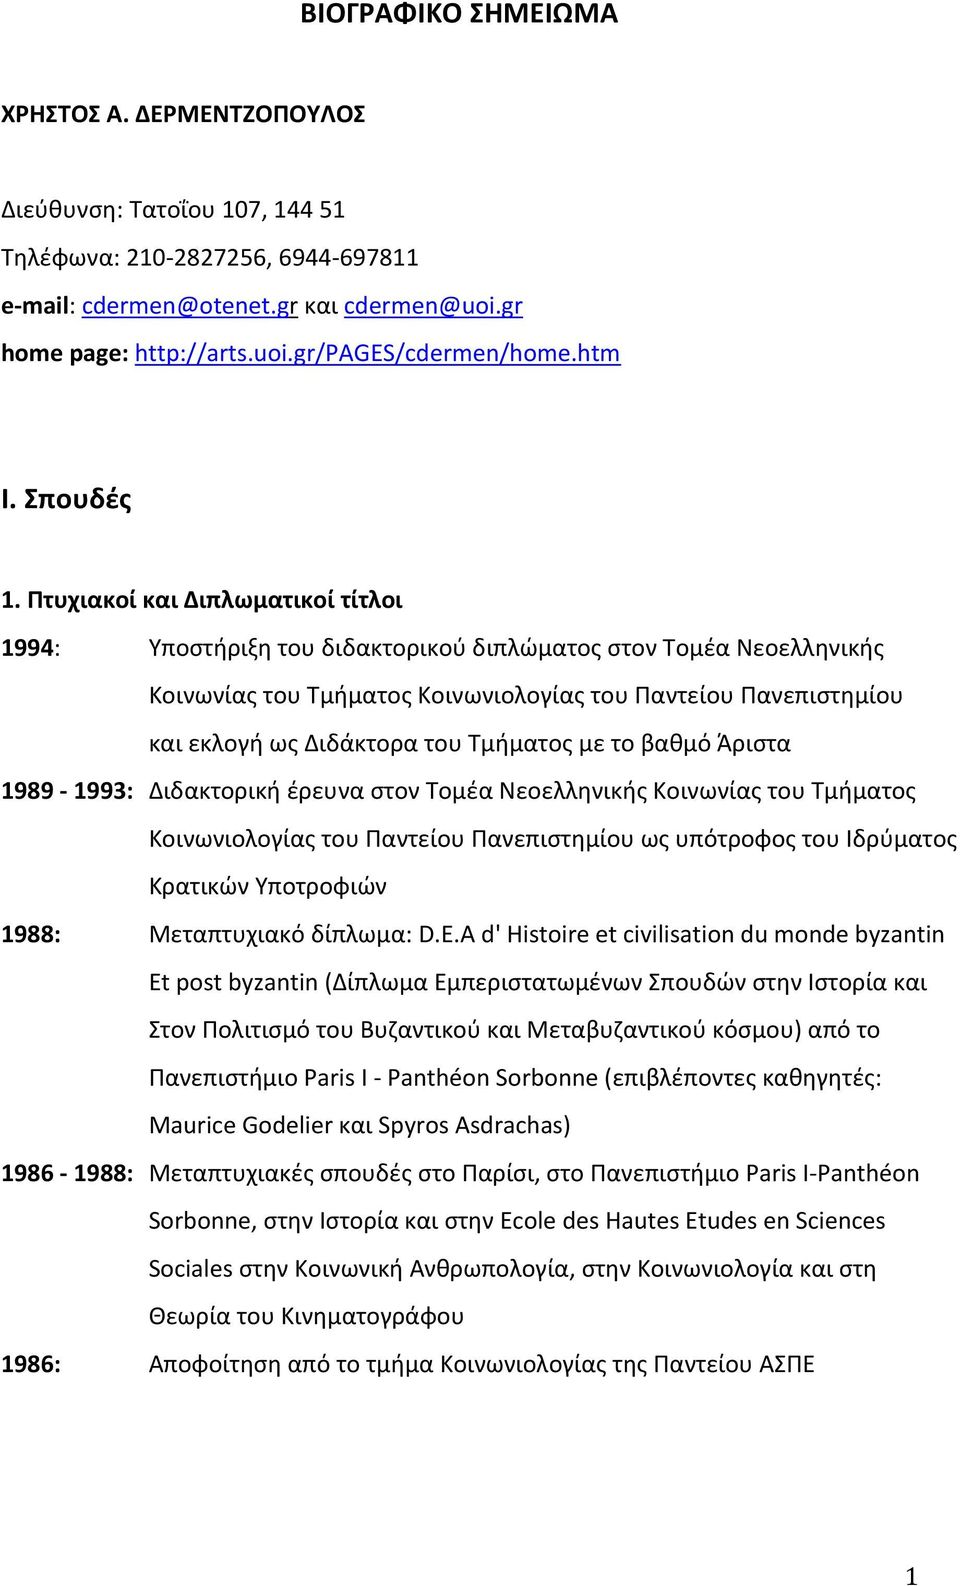 Πτυχιακοί και Διπλωματικοί τίτλοι 1994: Yποστήριξη του διδακτορικού διπλώματος στον Tομέα Nεοελληνικής Kοινωνίας του Tμήματος Kοινωνιολογίας του Παντείου Πανεπιστημίου και εκλογή ως Διδάκτορα του